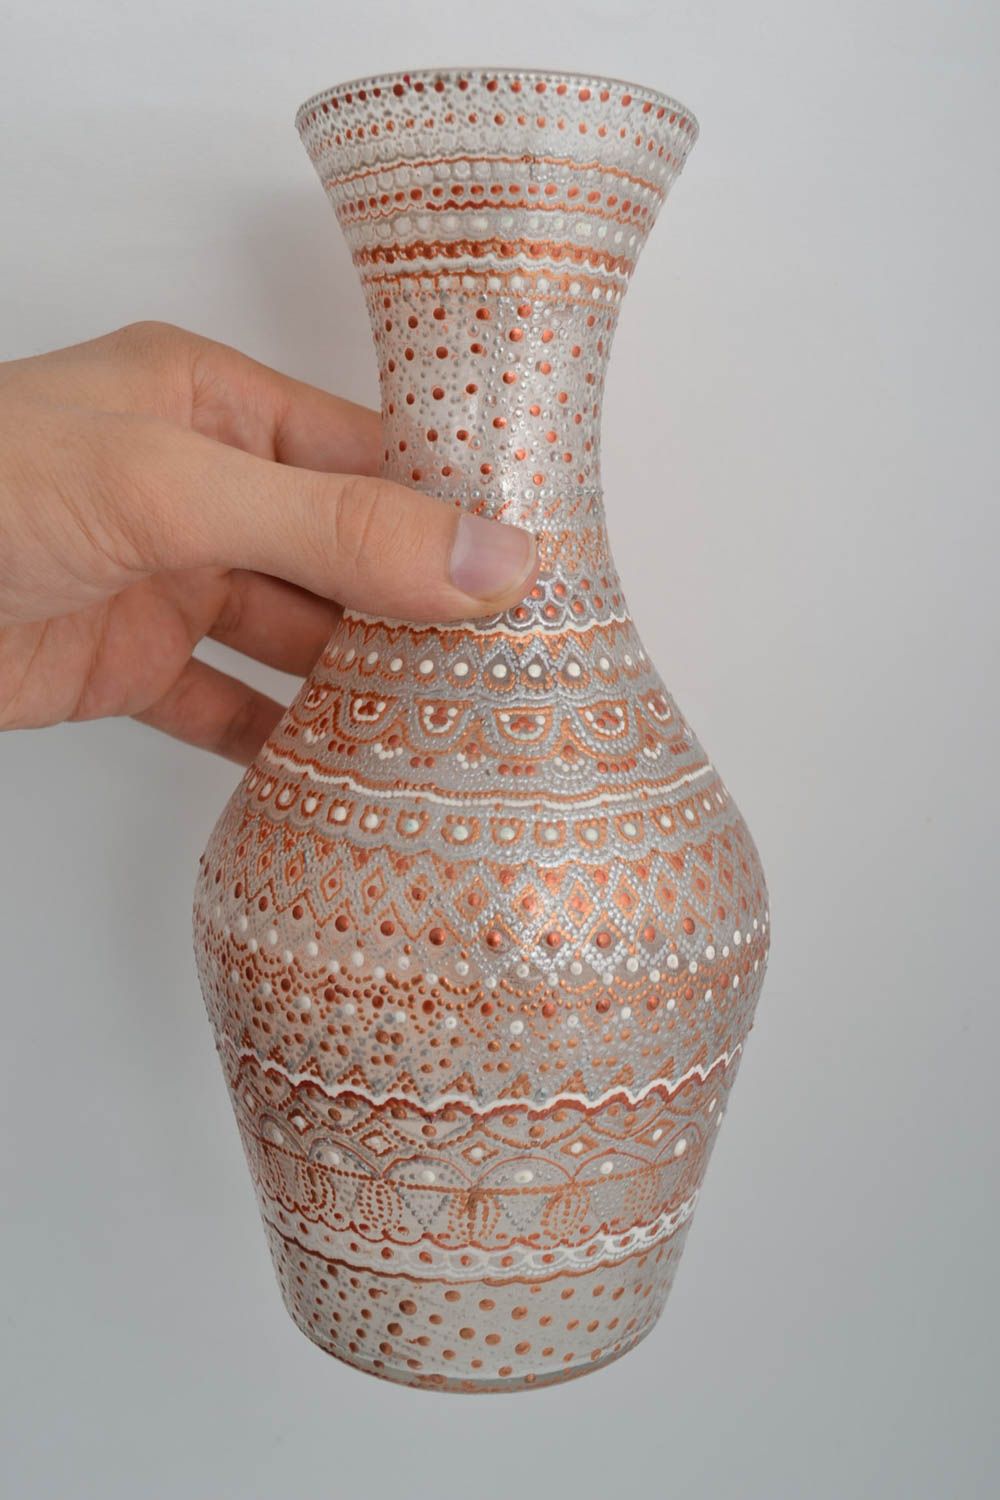 Handmade Vase aus Glas Haus Deko bemalte Vase originell weiß golden gepunktet foto 5